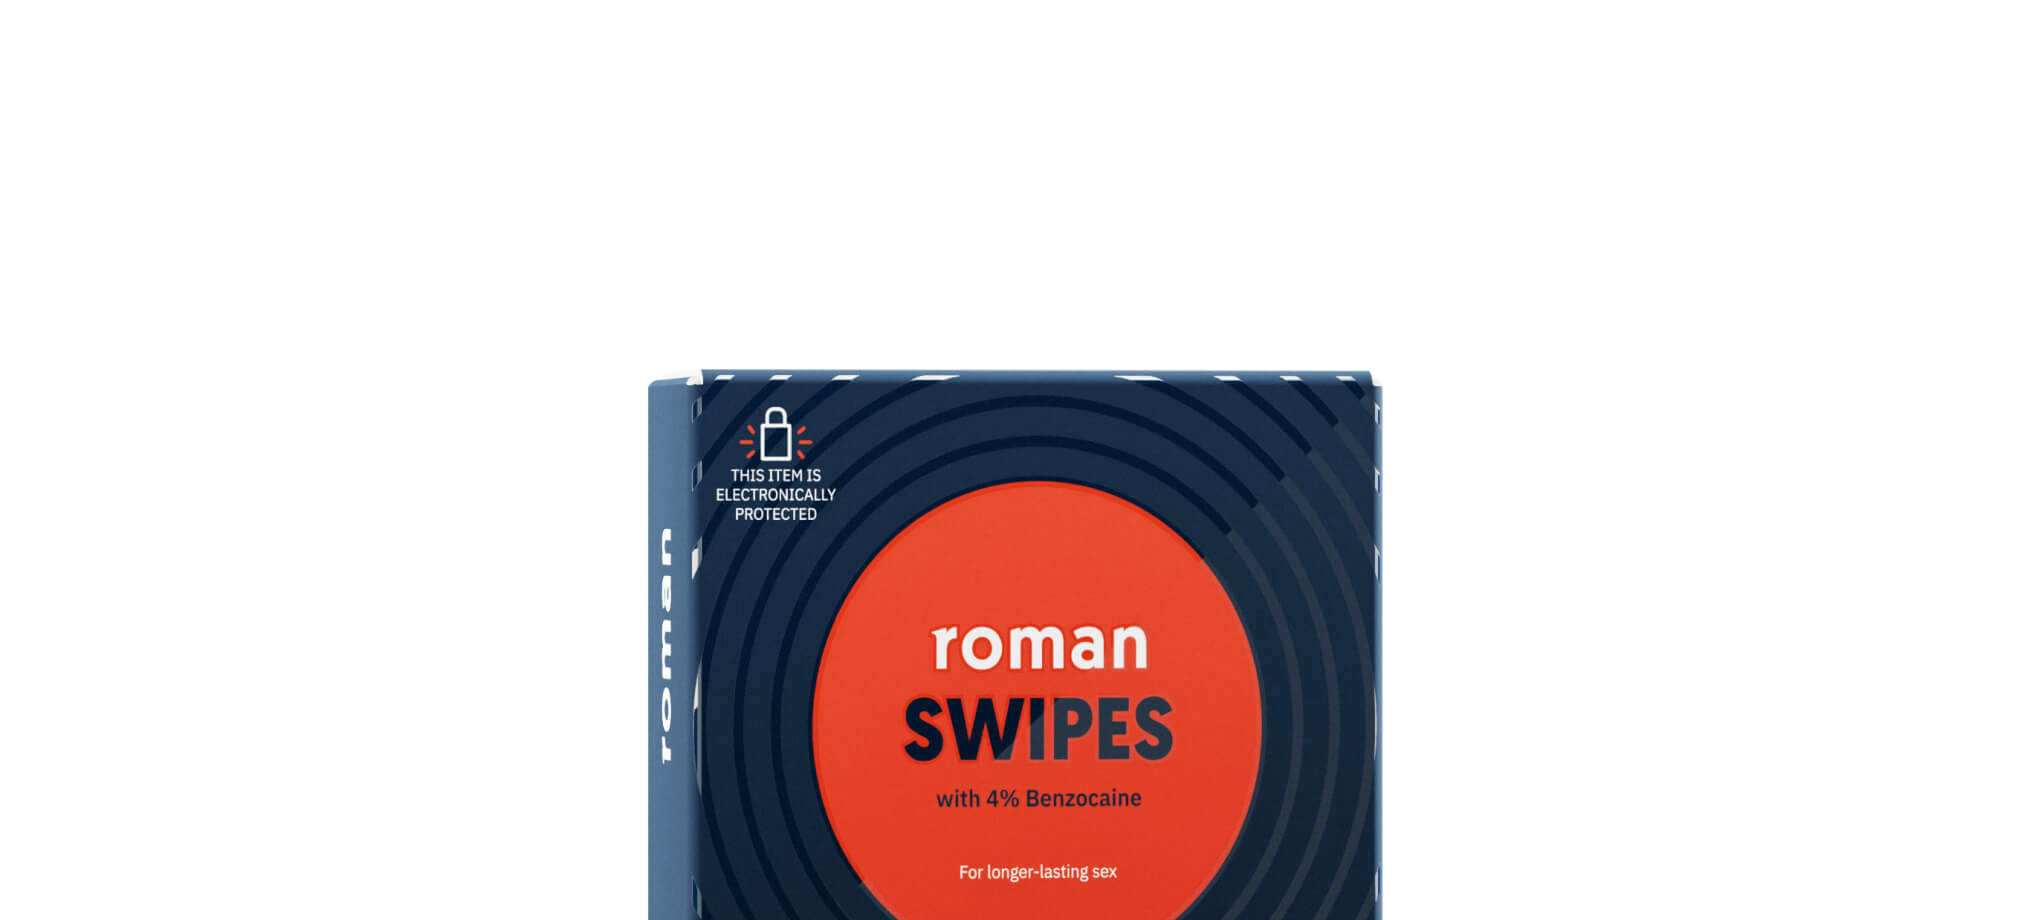 Roman Swipes packaging